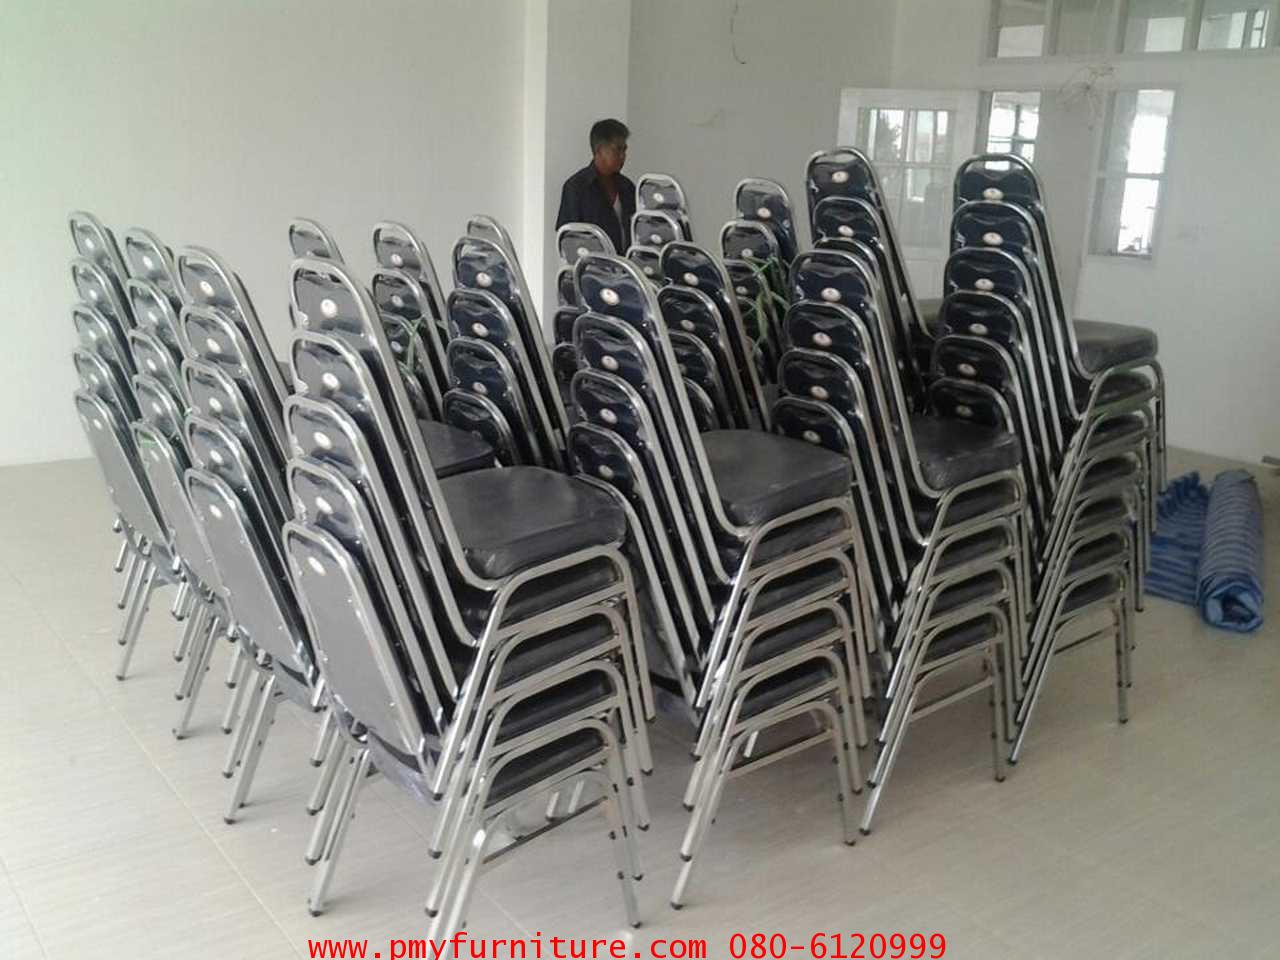 10-4-56 ส่งเก้าอี้จัดเลี้ยง 96 ตัว โรงเรียนกสินธรเซ็นปีเตอร์ นนทบุรี